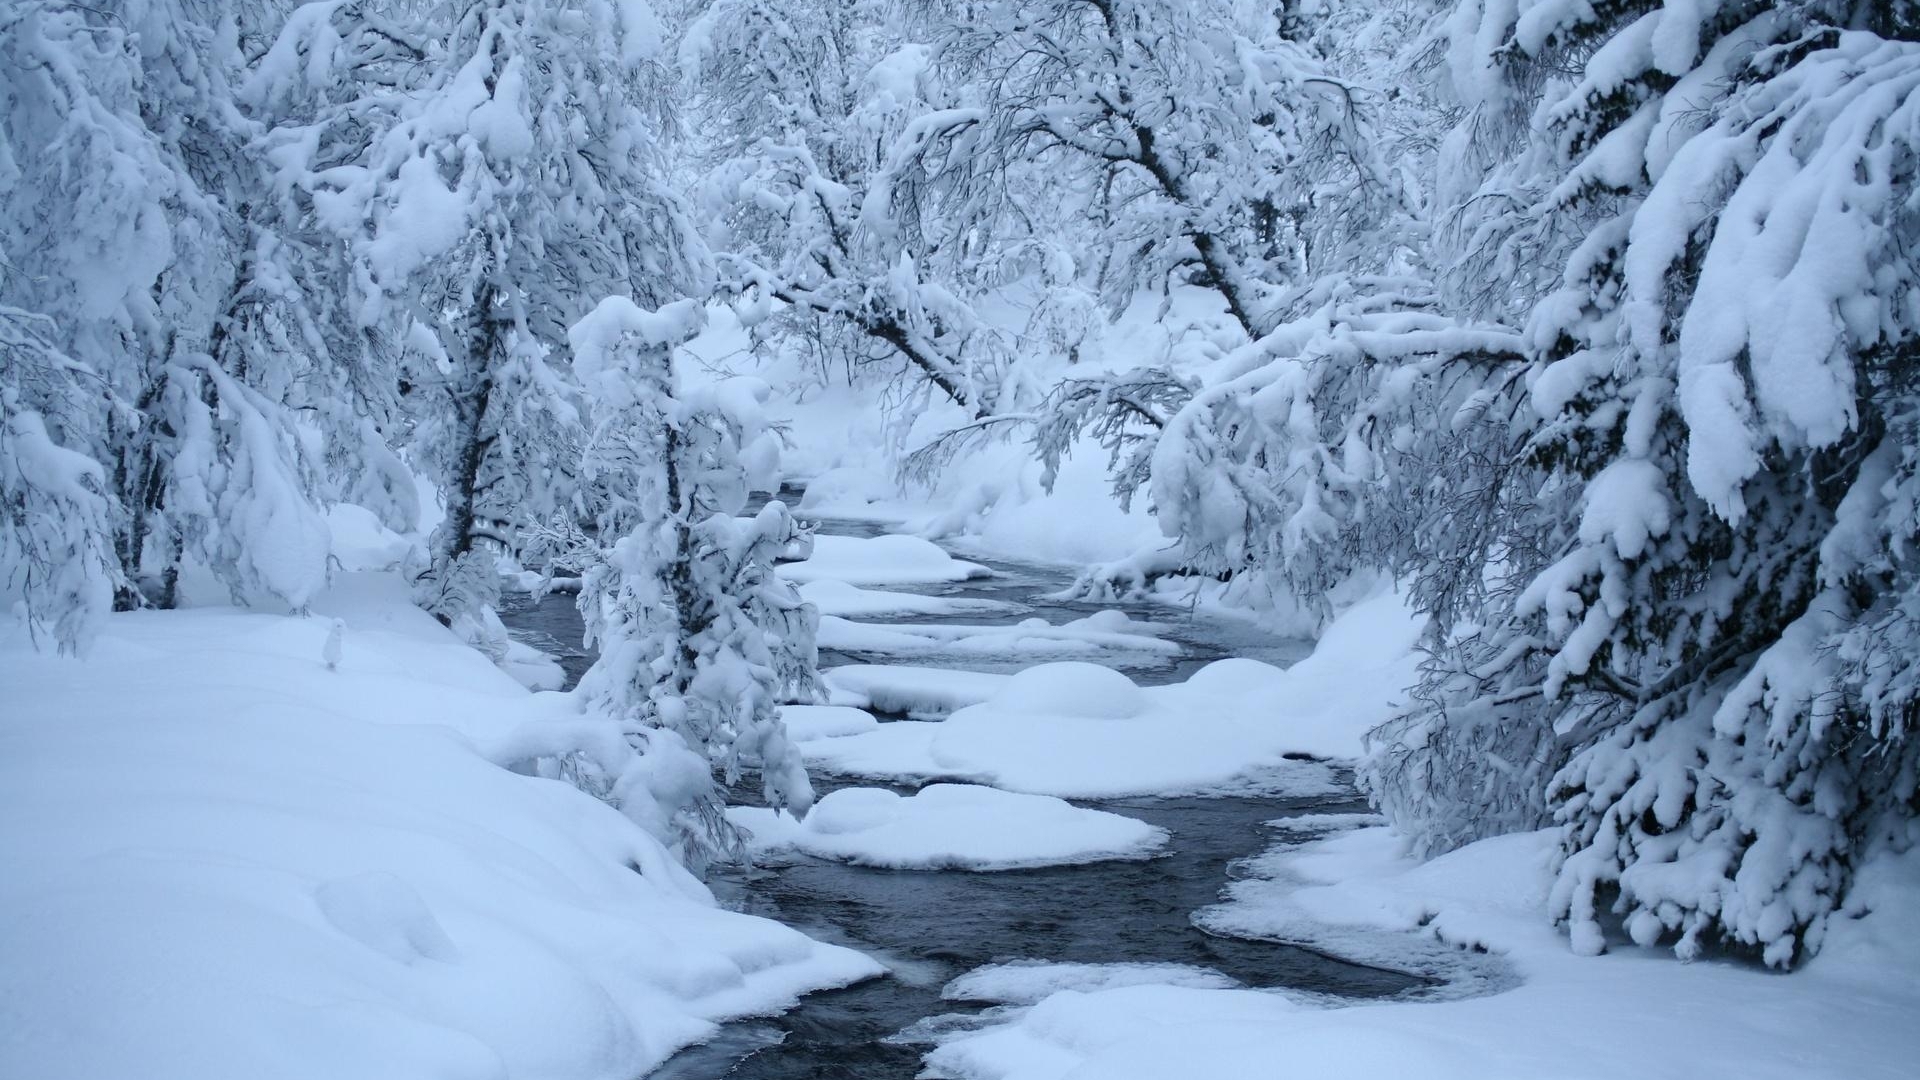 雪景壁纸精选好看的自然风景冬天雪景高清电脑桌面壁纸下载5p 唯一图库